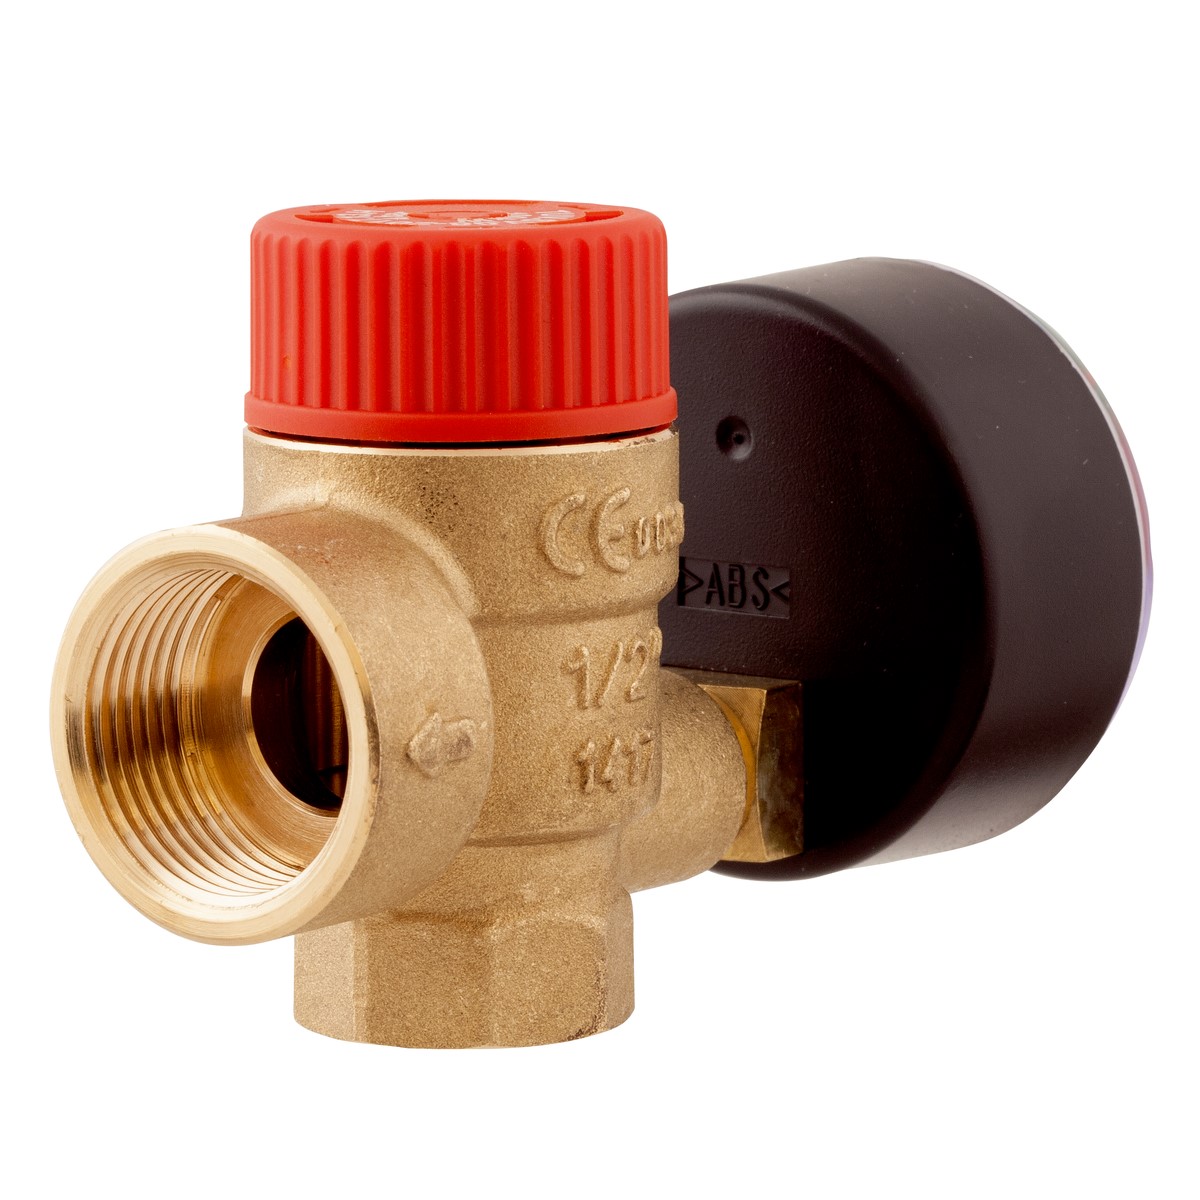 Pojistný ventil pro ústřední topení MS s výstupem pro manometr GW G¼", 3 bary, G½" x Rp½" - AFRISO.CZ